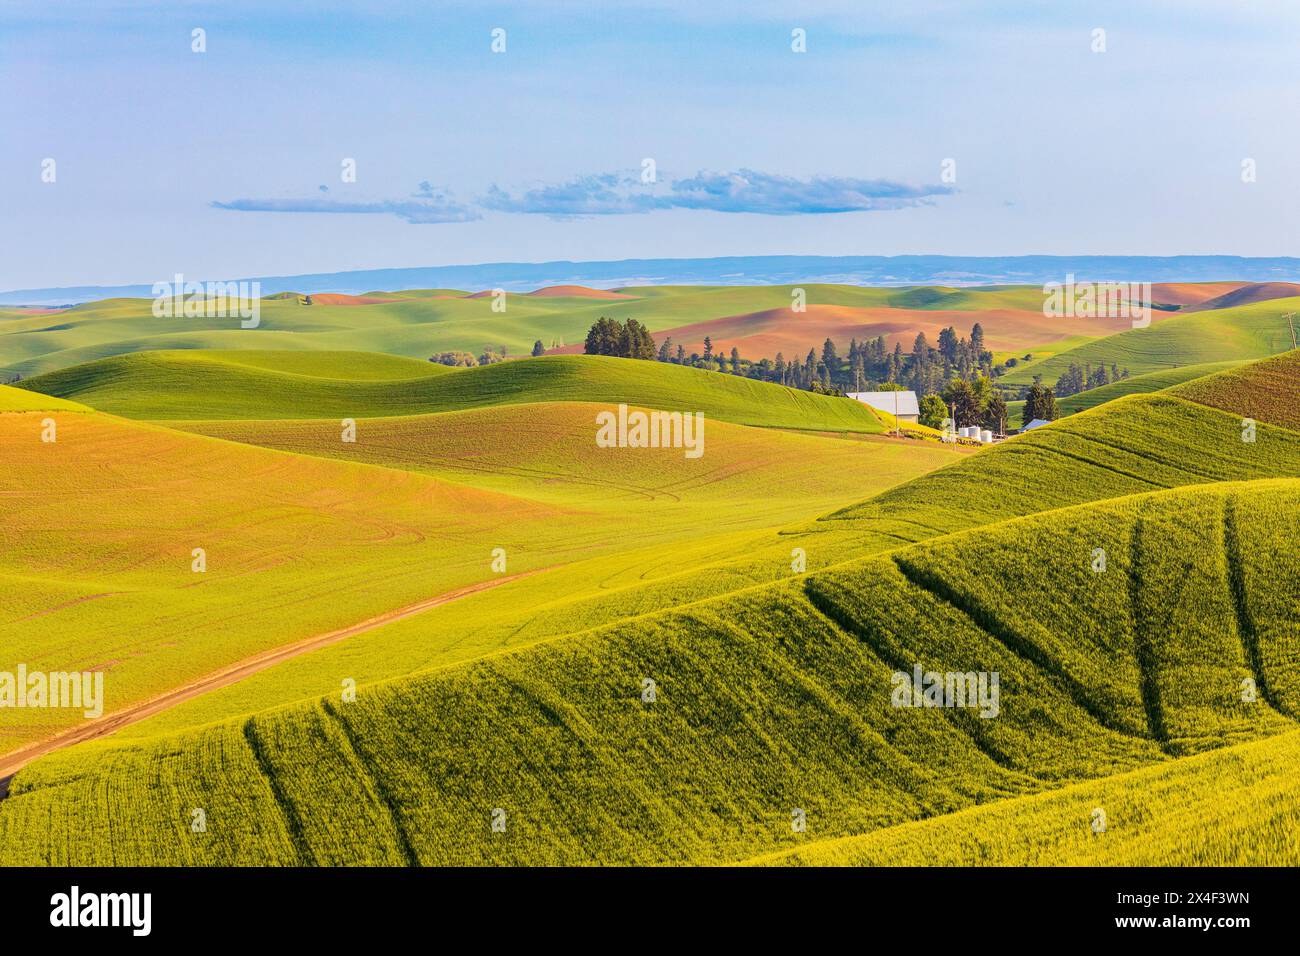 USA, Washington State, Palouse, Colfax. Sanfte grüne Hügel aus Weizen. Traktormarkierungen. Stockfoto